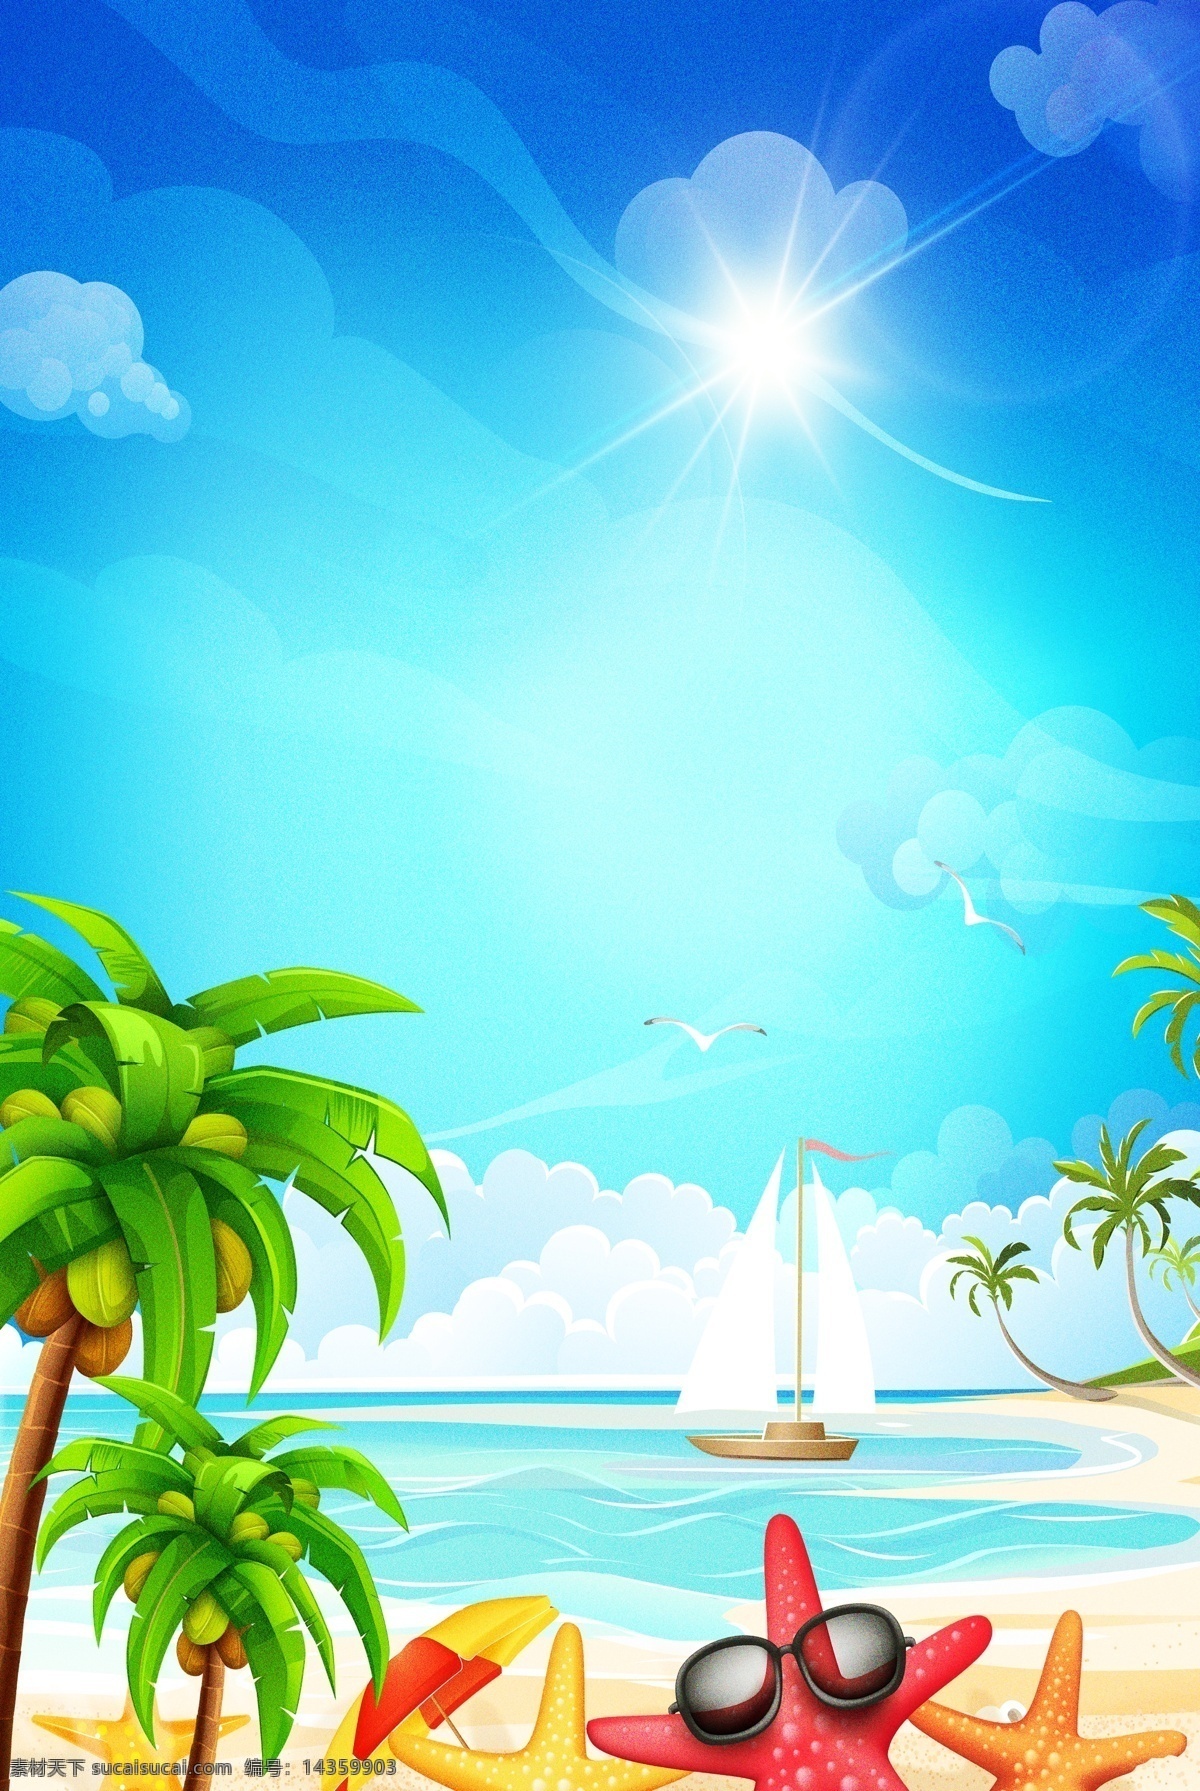 简单 沙滩 海星 主题 背景 夏日 初夏 夏季 夏天 夏日场景 景色 美景 夏至 花卉 绿植